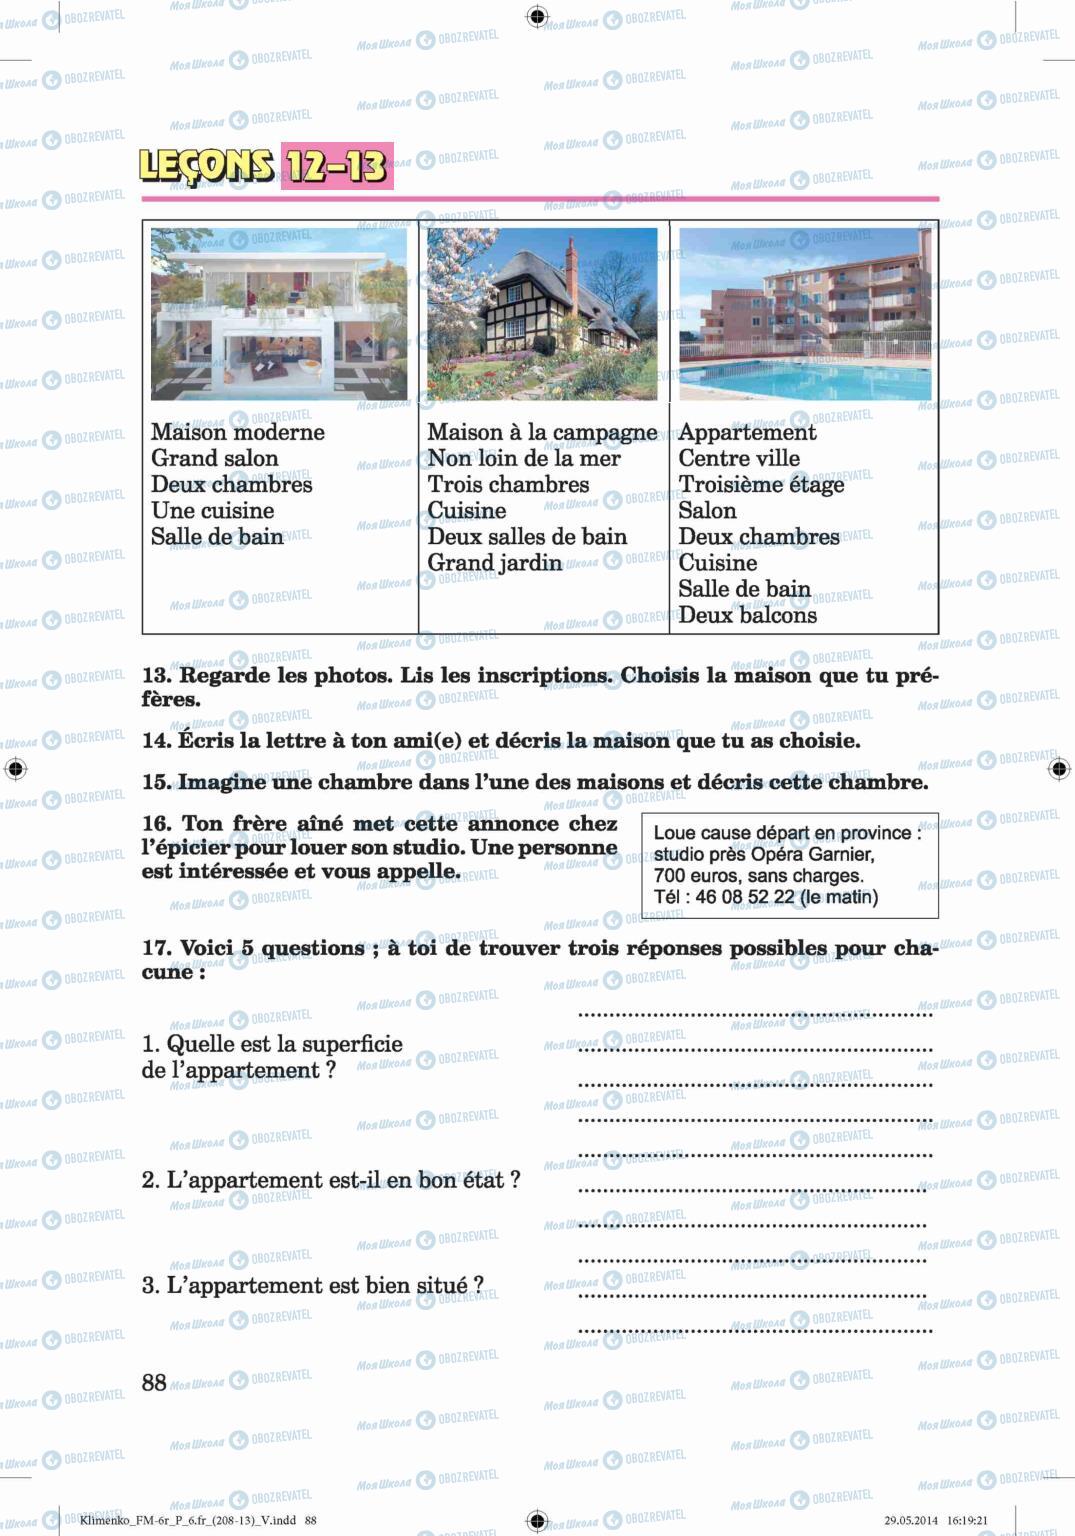 Підручники Французька мова 6 клас сторінка 88